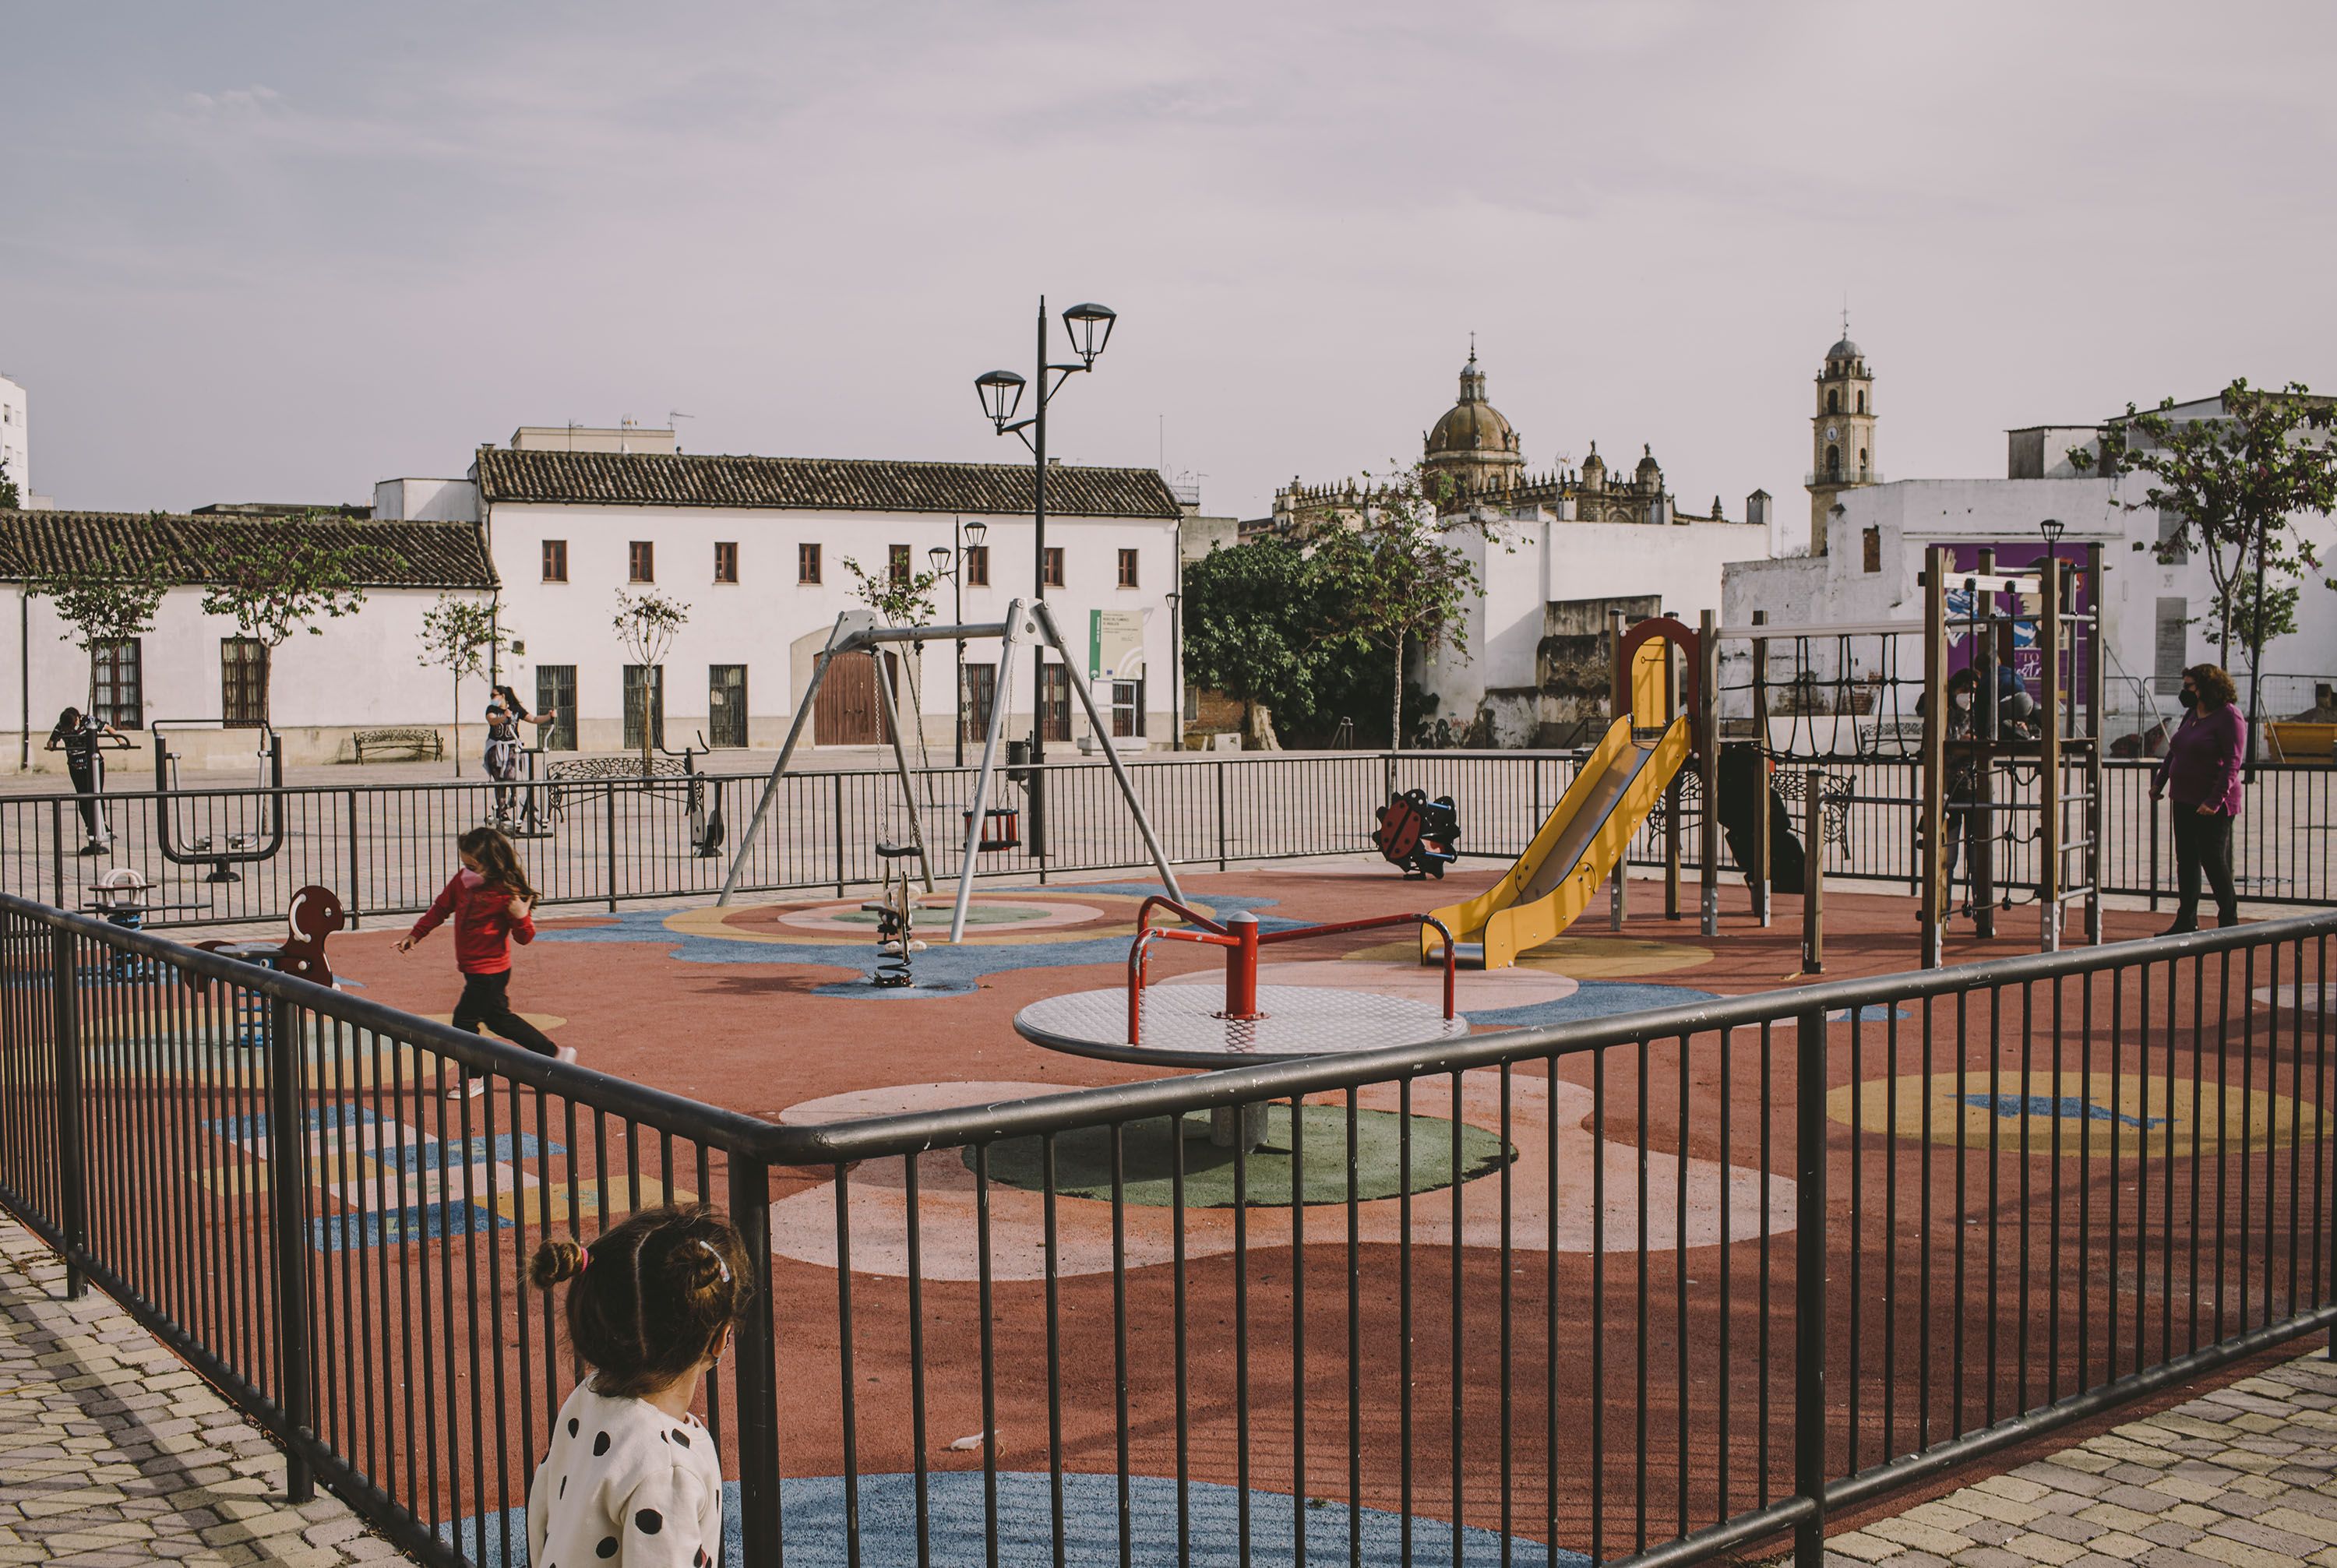 Menores jugando en uno de los parques infantiles del centro histórico de Jerez, en una imagen de archivo.